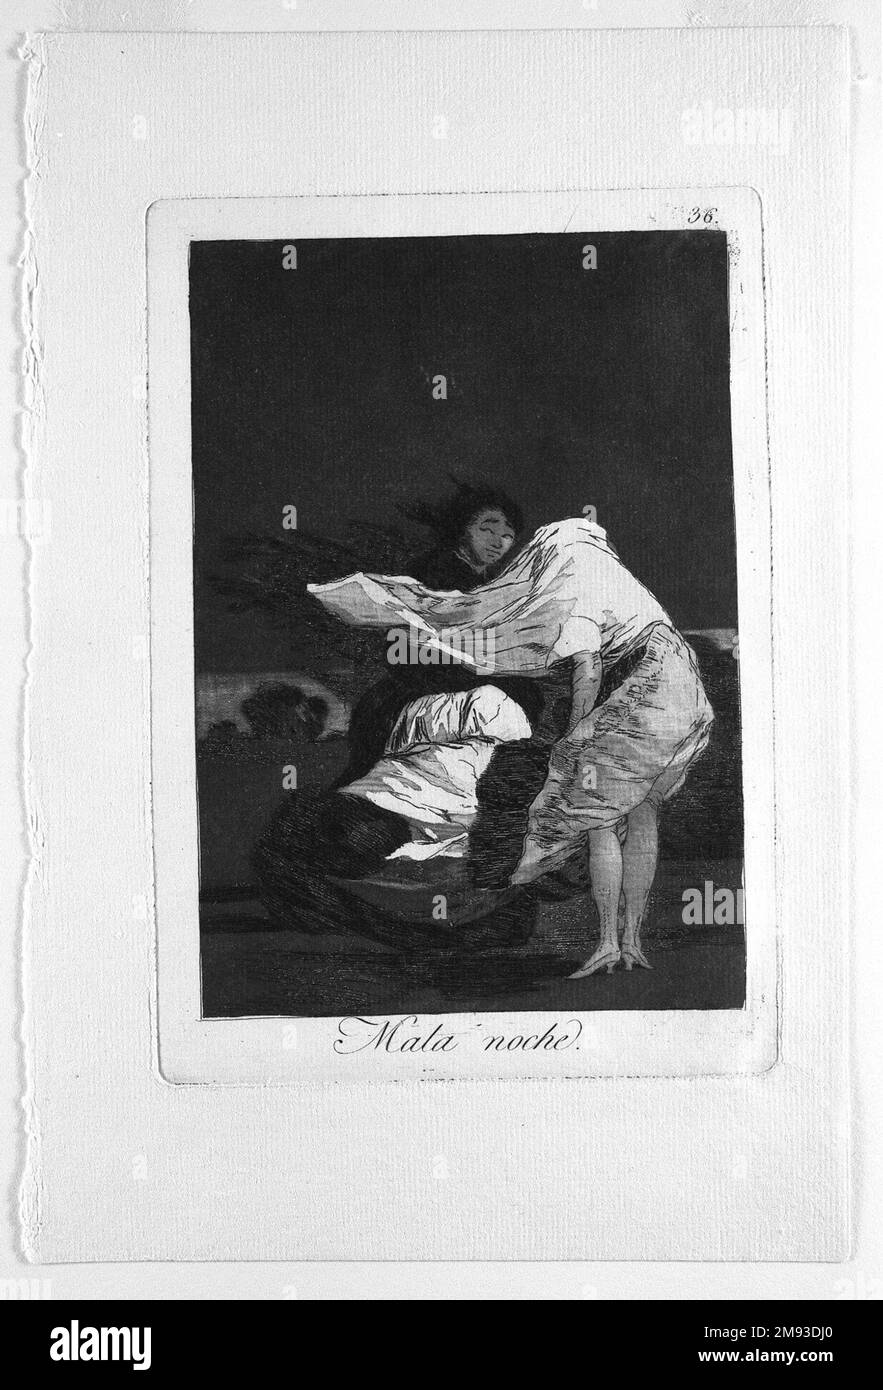 A Bad Night (Mala noche) Francisco de Goya y Lucientes (spagnolo, 1746-1828). Una notte cattiva (Mala noche), 1797-1798. Incisione e acquatinta su carta posata, foglio: 11 7/8 x 7 15/16 poll. (30,2 x 20,2 cm). Arte europea 1797-1798 Foto Stock